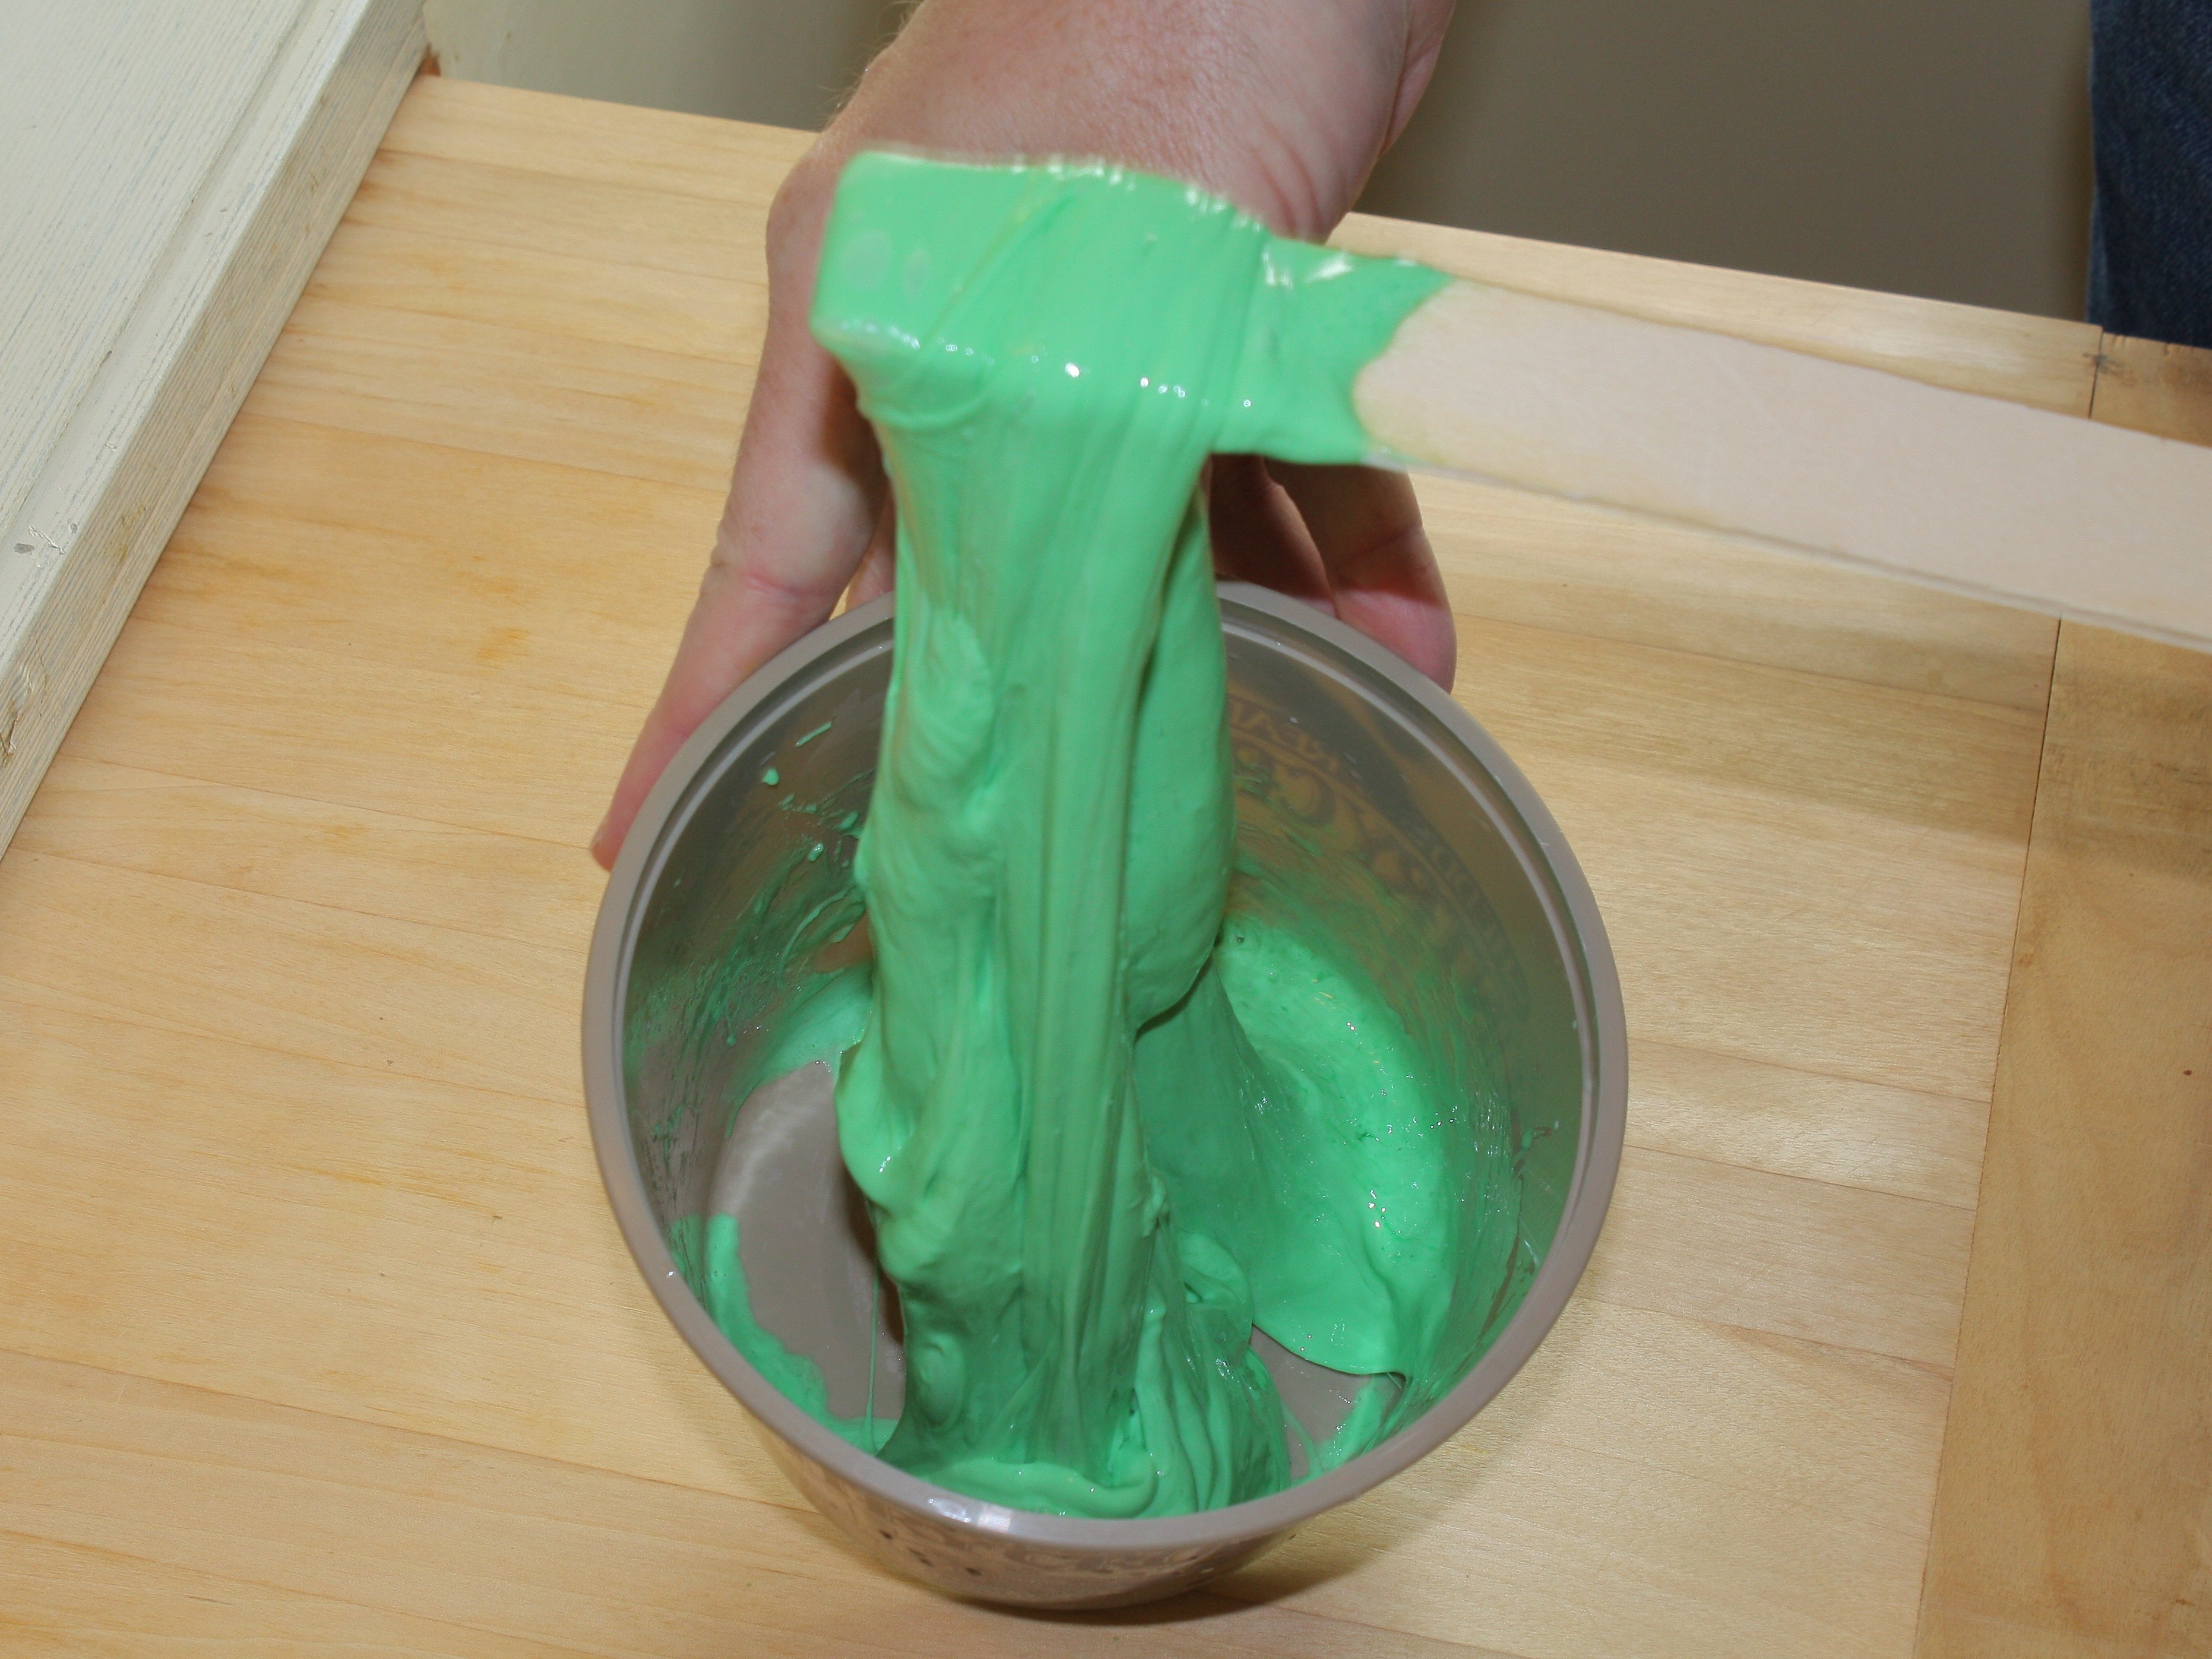 Как сделать очень легко лизуна: Как сделать лизуна из краски. Как сделать лизун в домашних условиях быстро и легко? Самые простые рецепты и правила хранения игрушки. Что такое «Лизун»